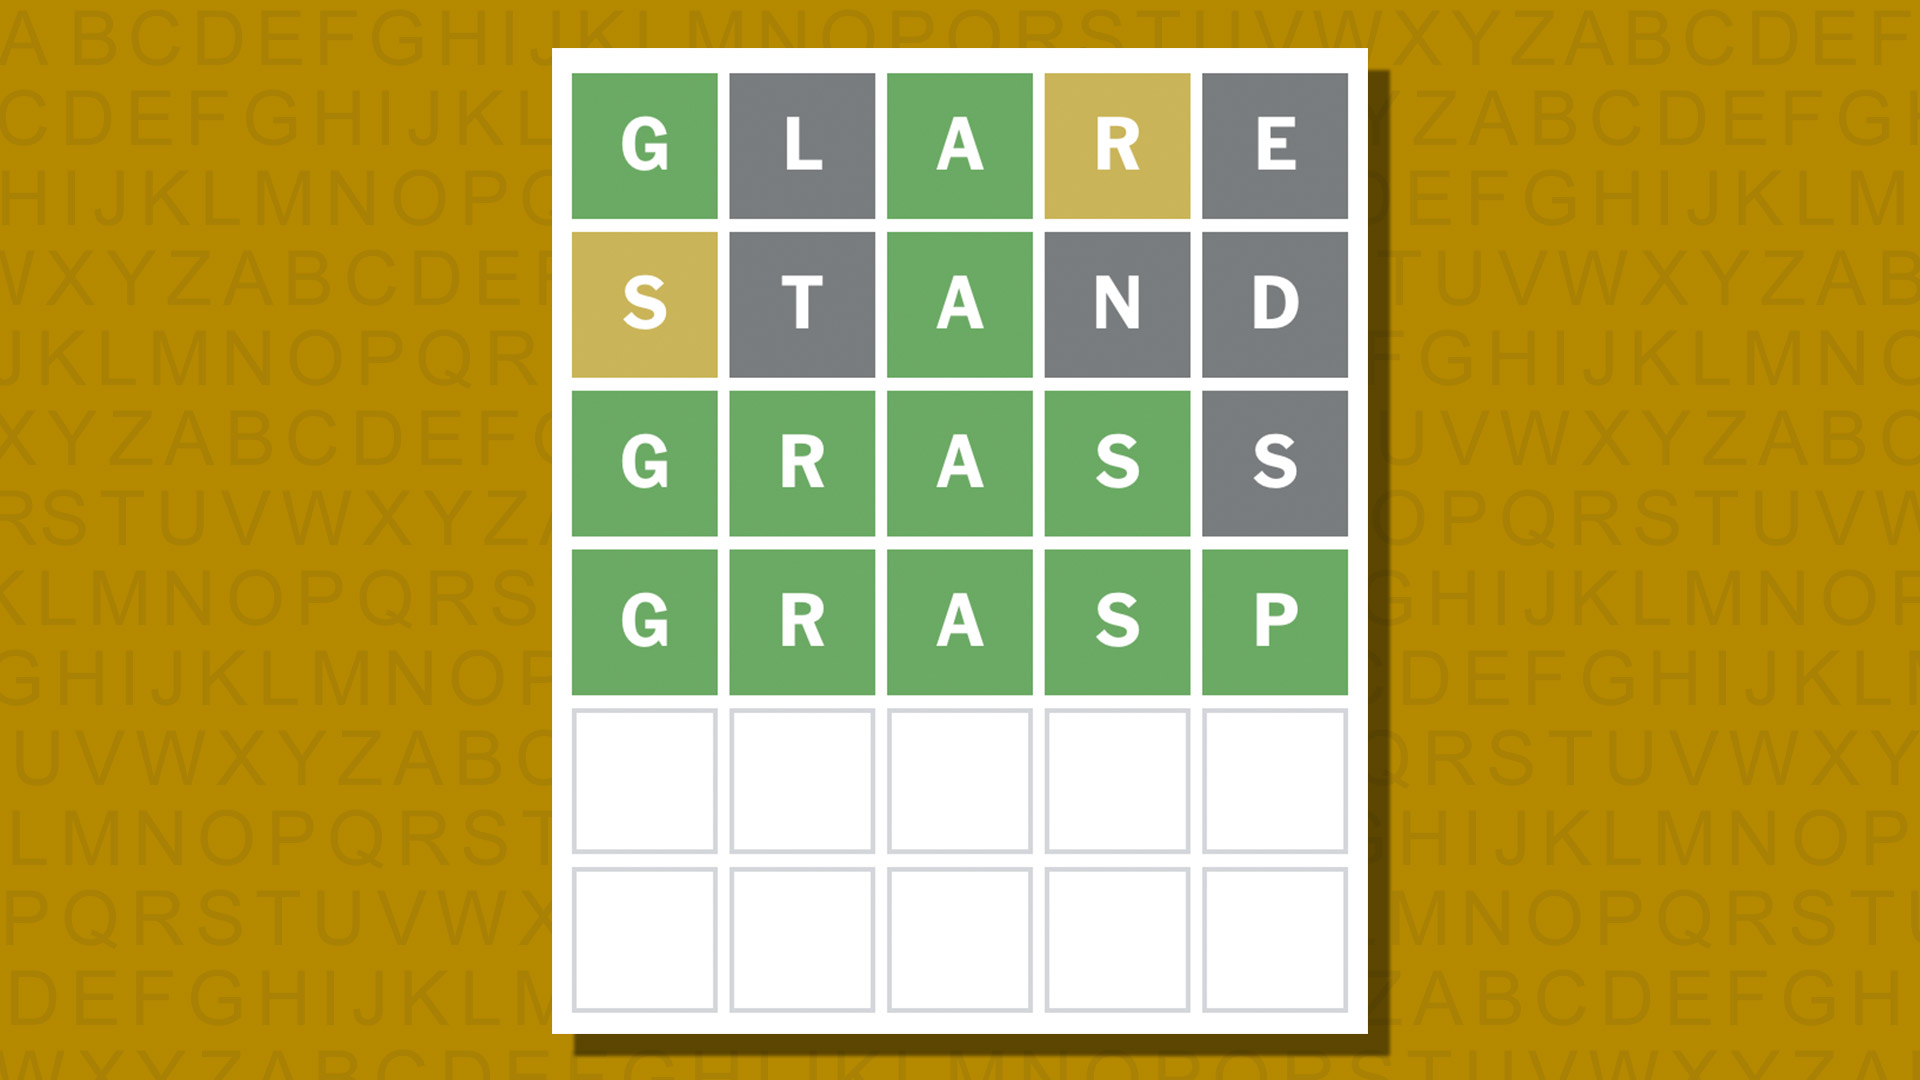 Ответ в формате Word для игры 995 на желтом фоне